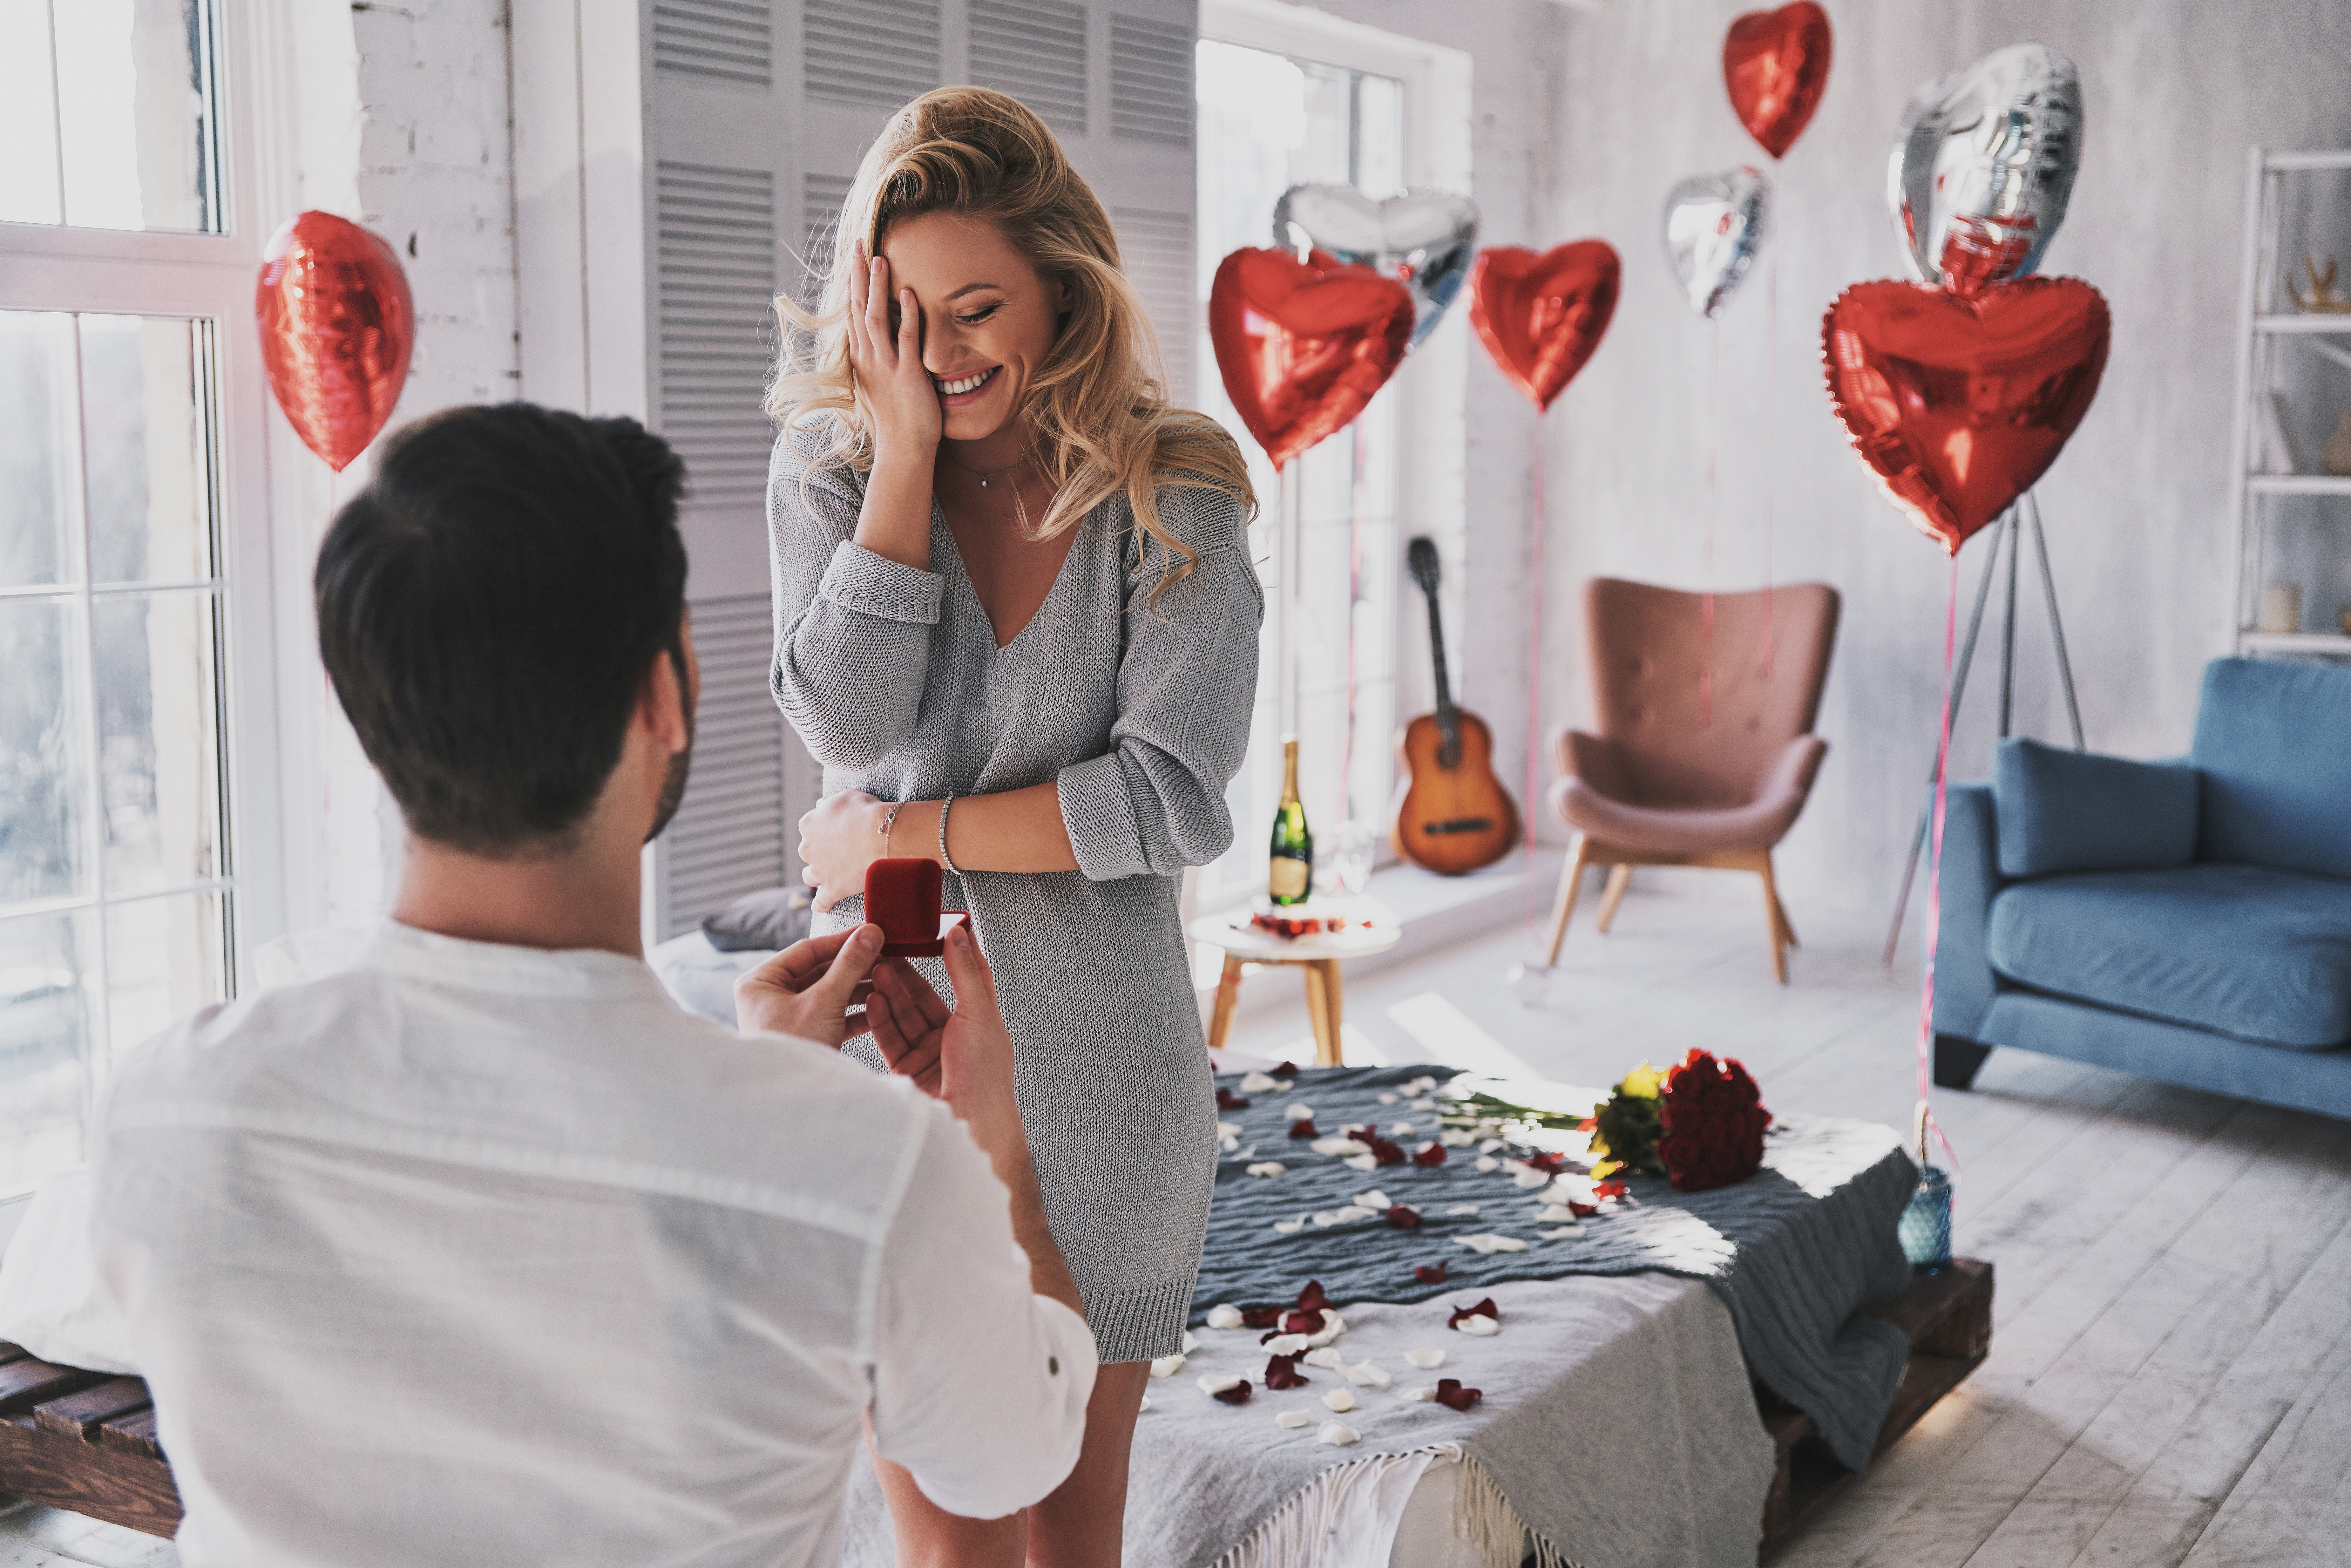 Un petit ami qui surprend sa petite amie avec une demande en mariage romantique | Source : Shutterstock